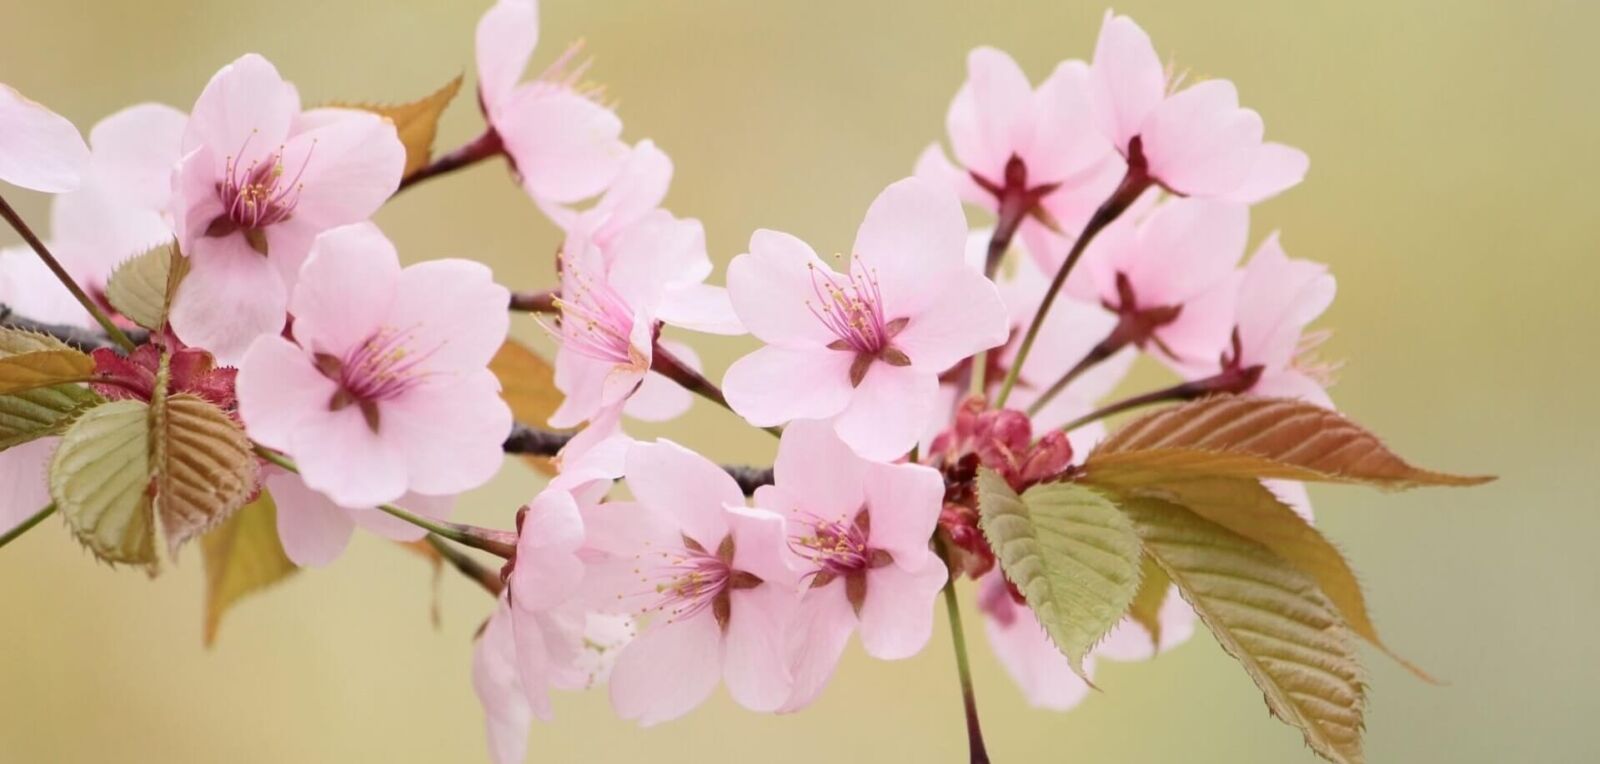 yamazakura-cherry-blossom-banner-edit